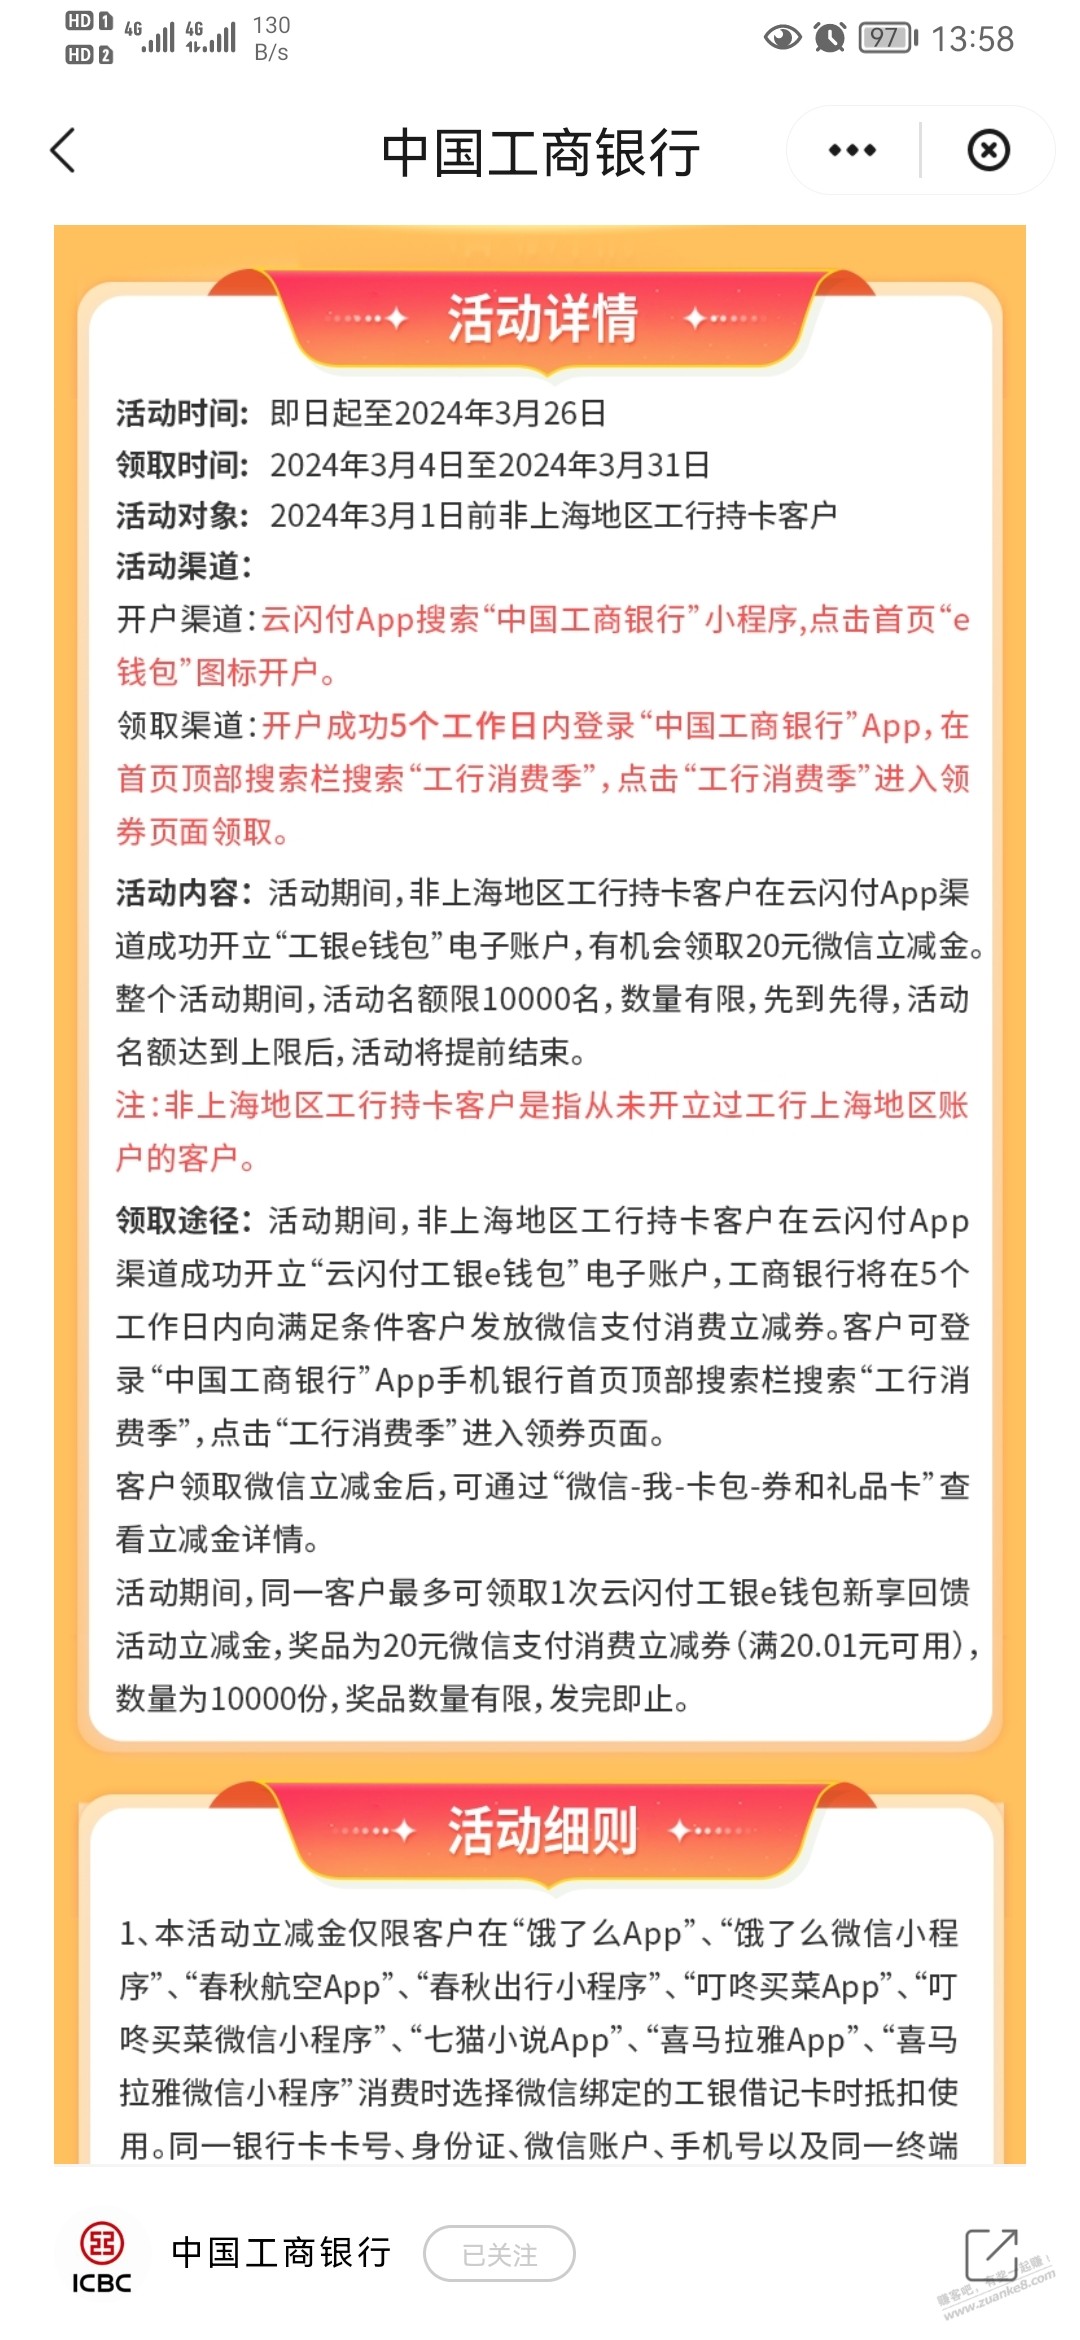 工行云闪付首次开通上海地区电子账户送20券  第1张